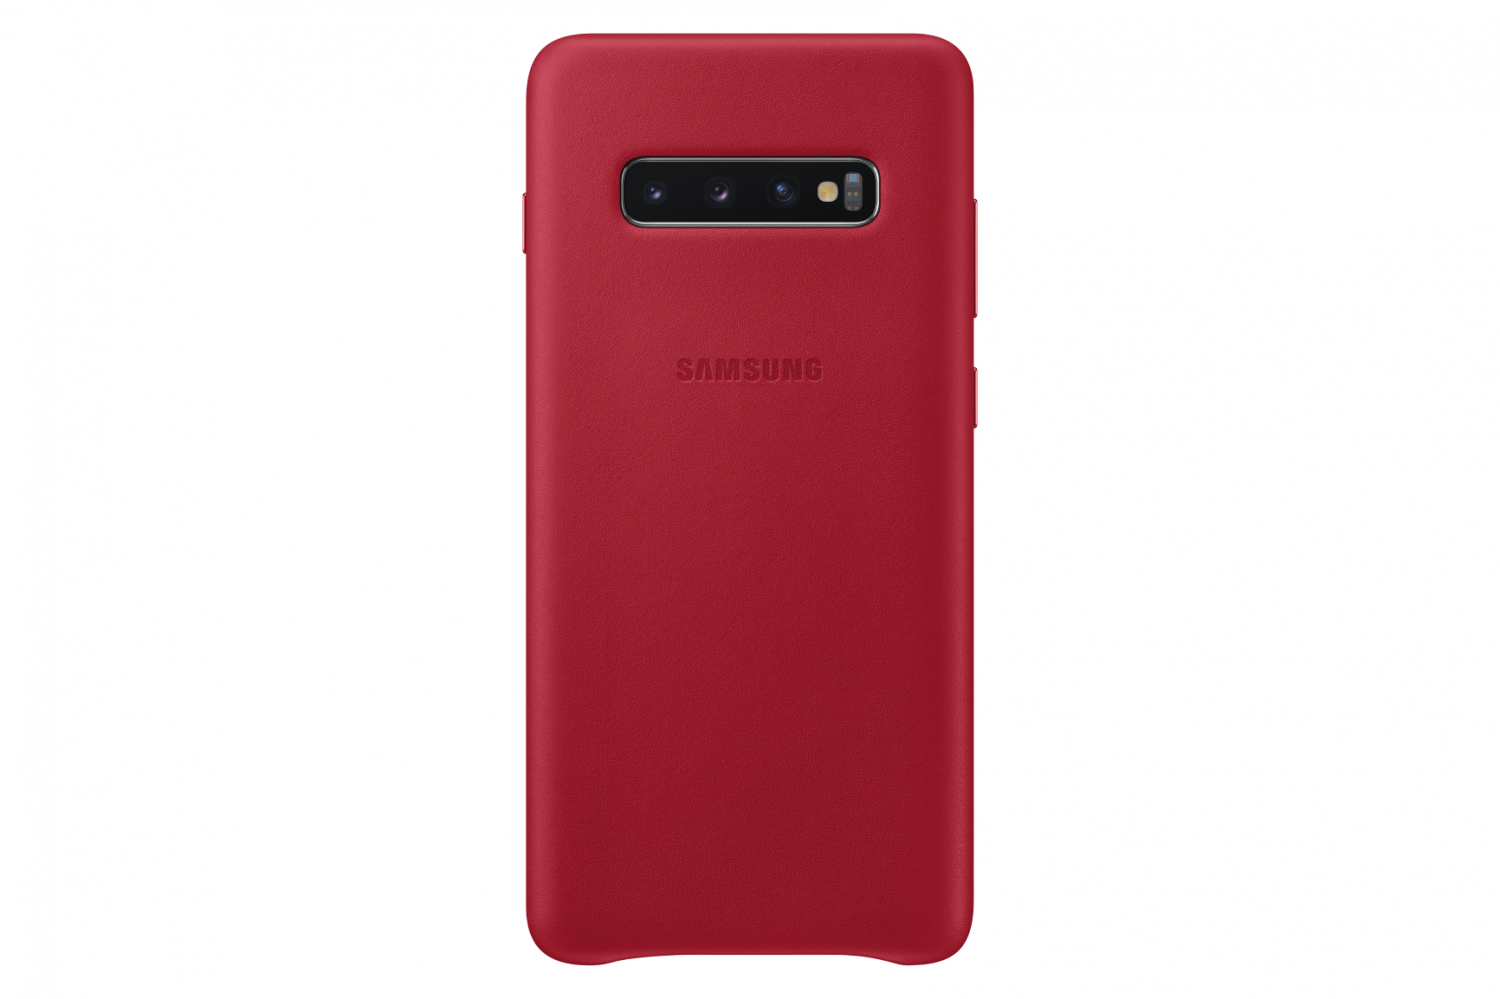 Ochranný kryt Samsung Leather Cover EF-VG975LRE pro Samsung Galaxy S10 plus, červená